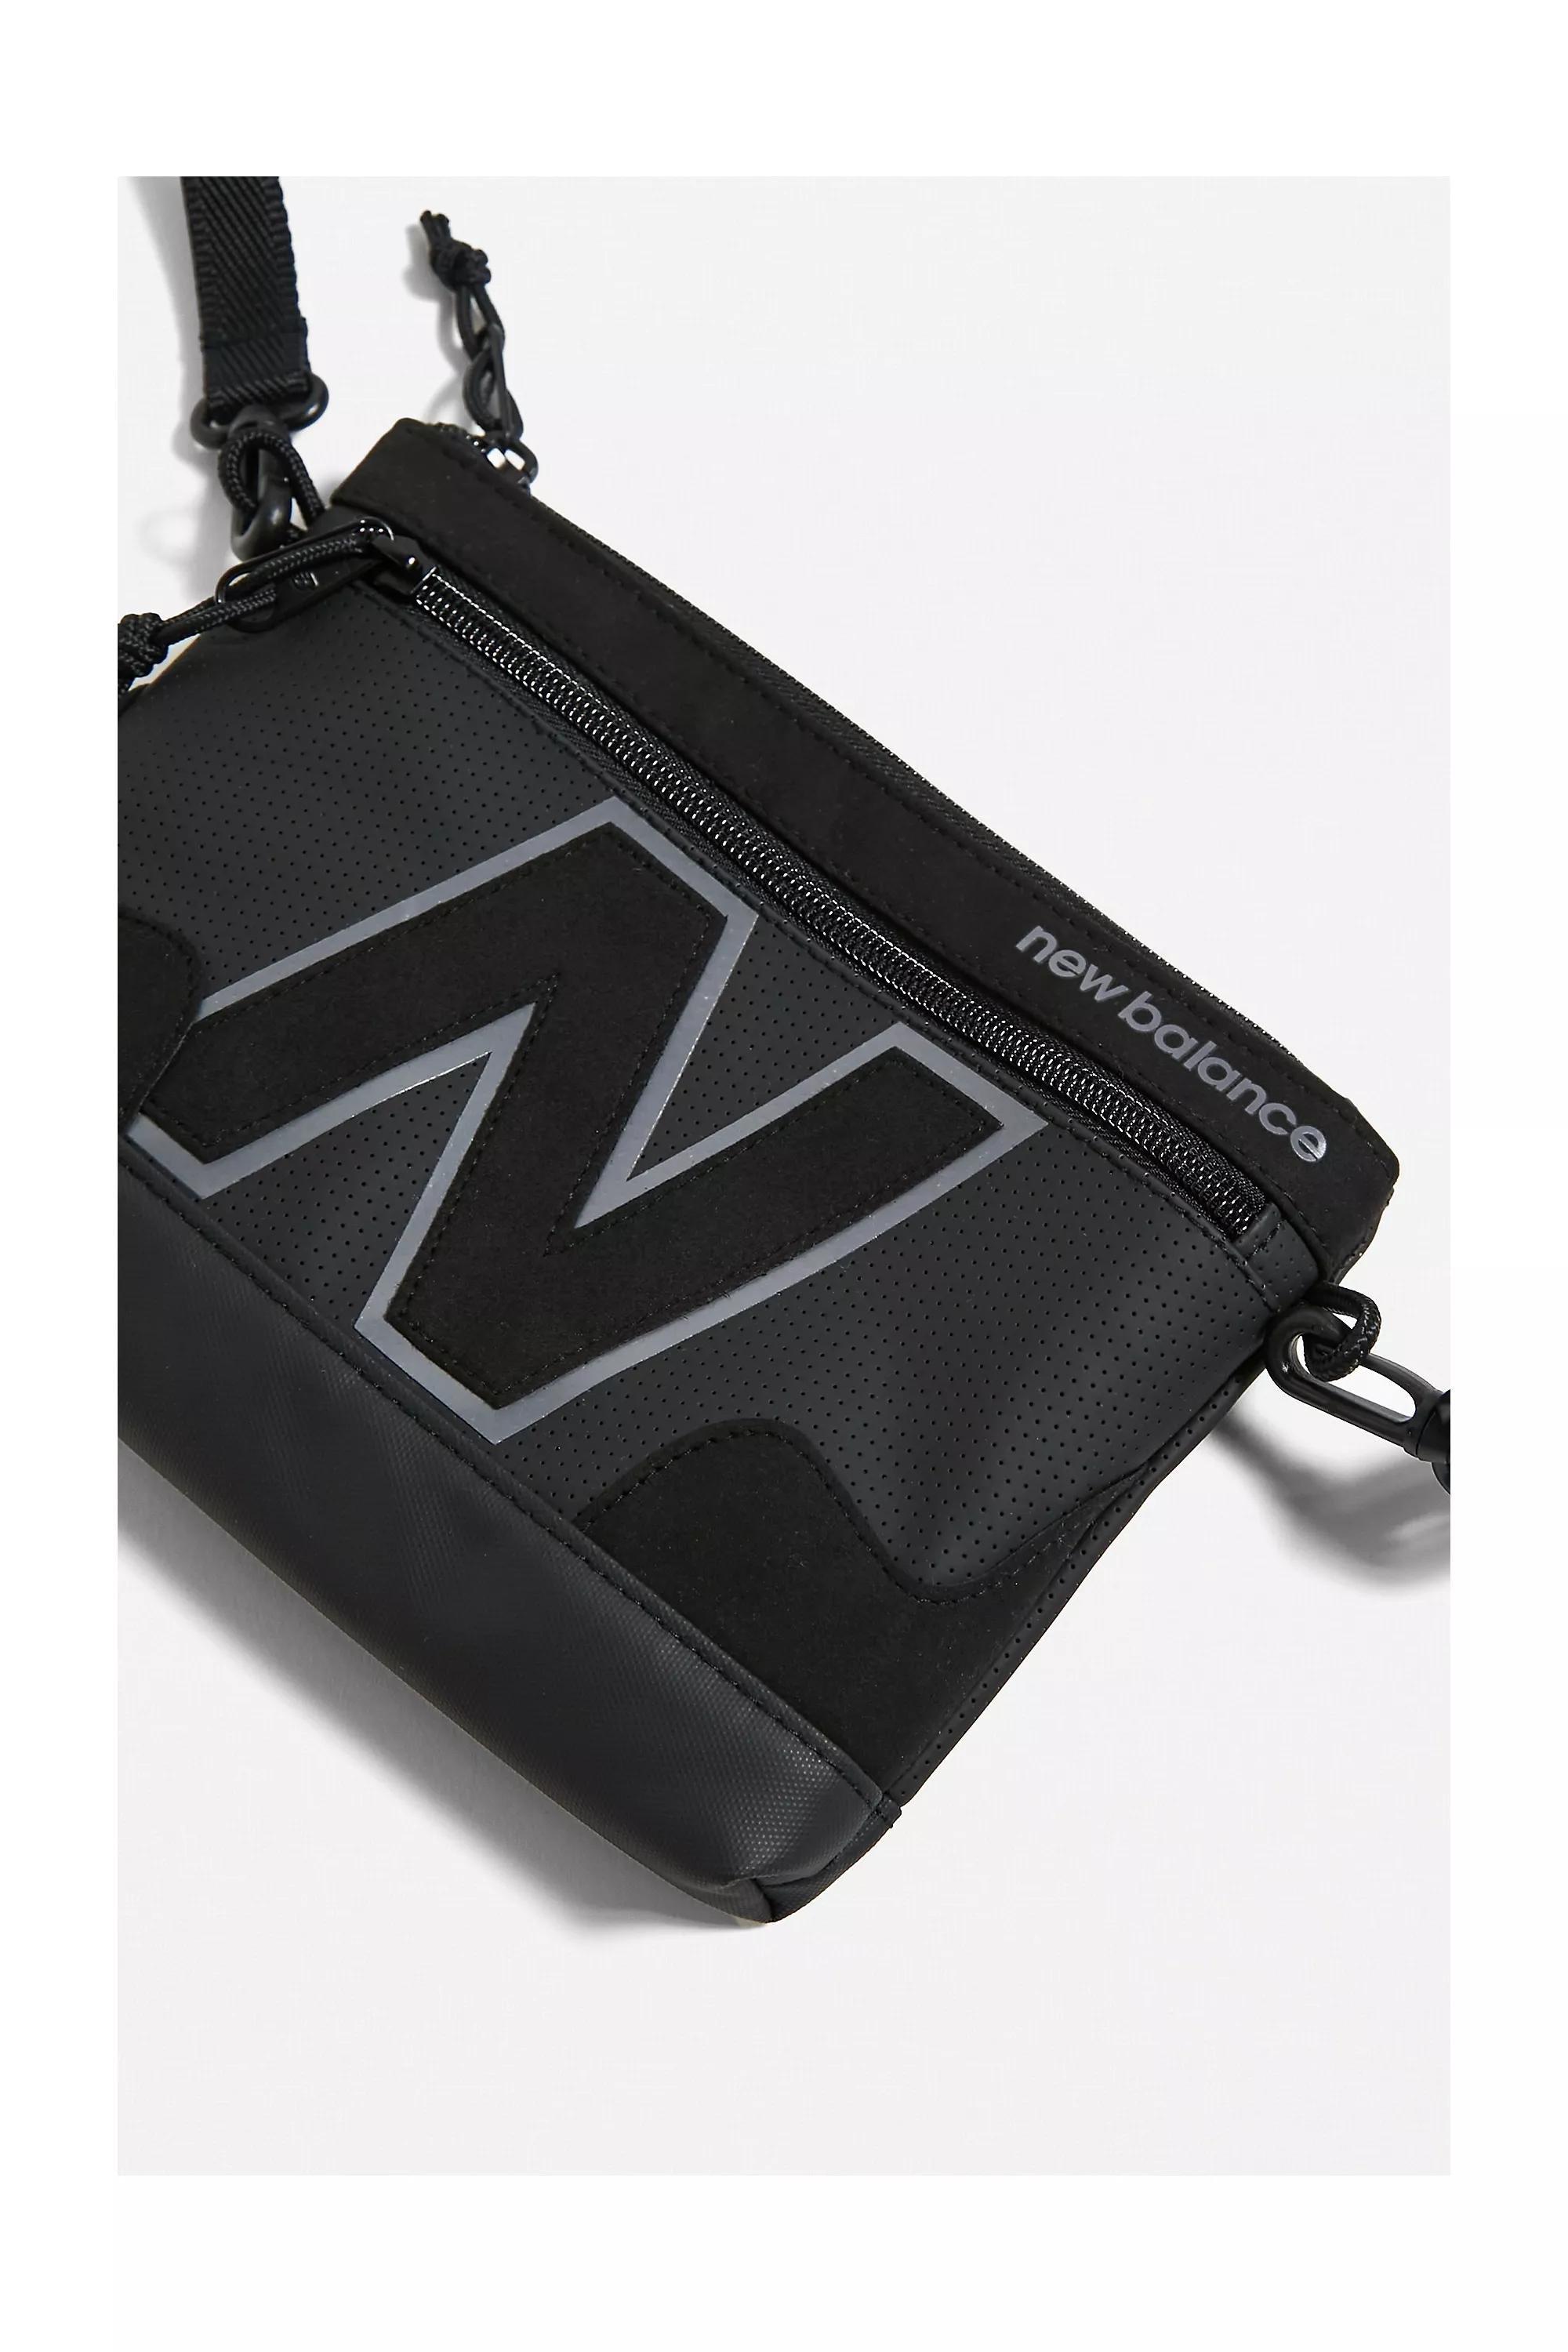 New Balance® Legacy Shoulder Bag